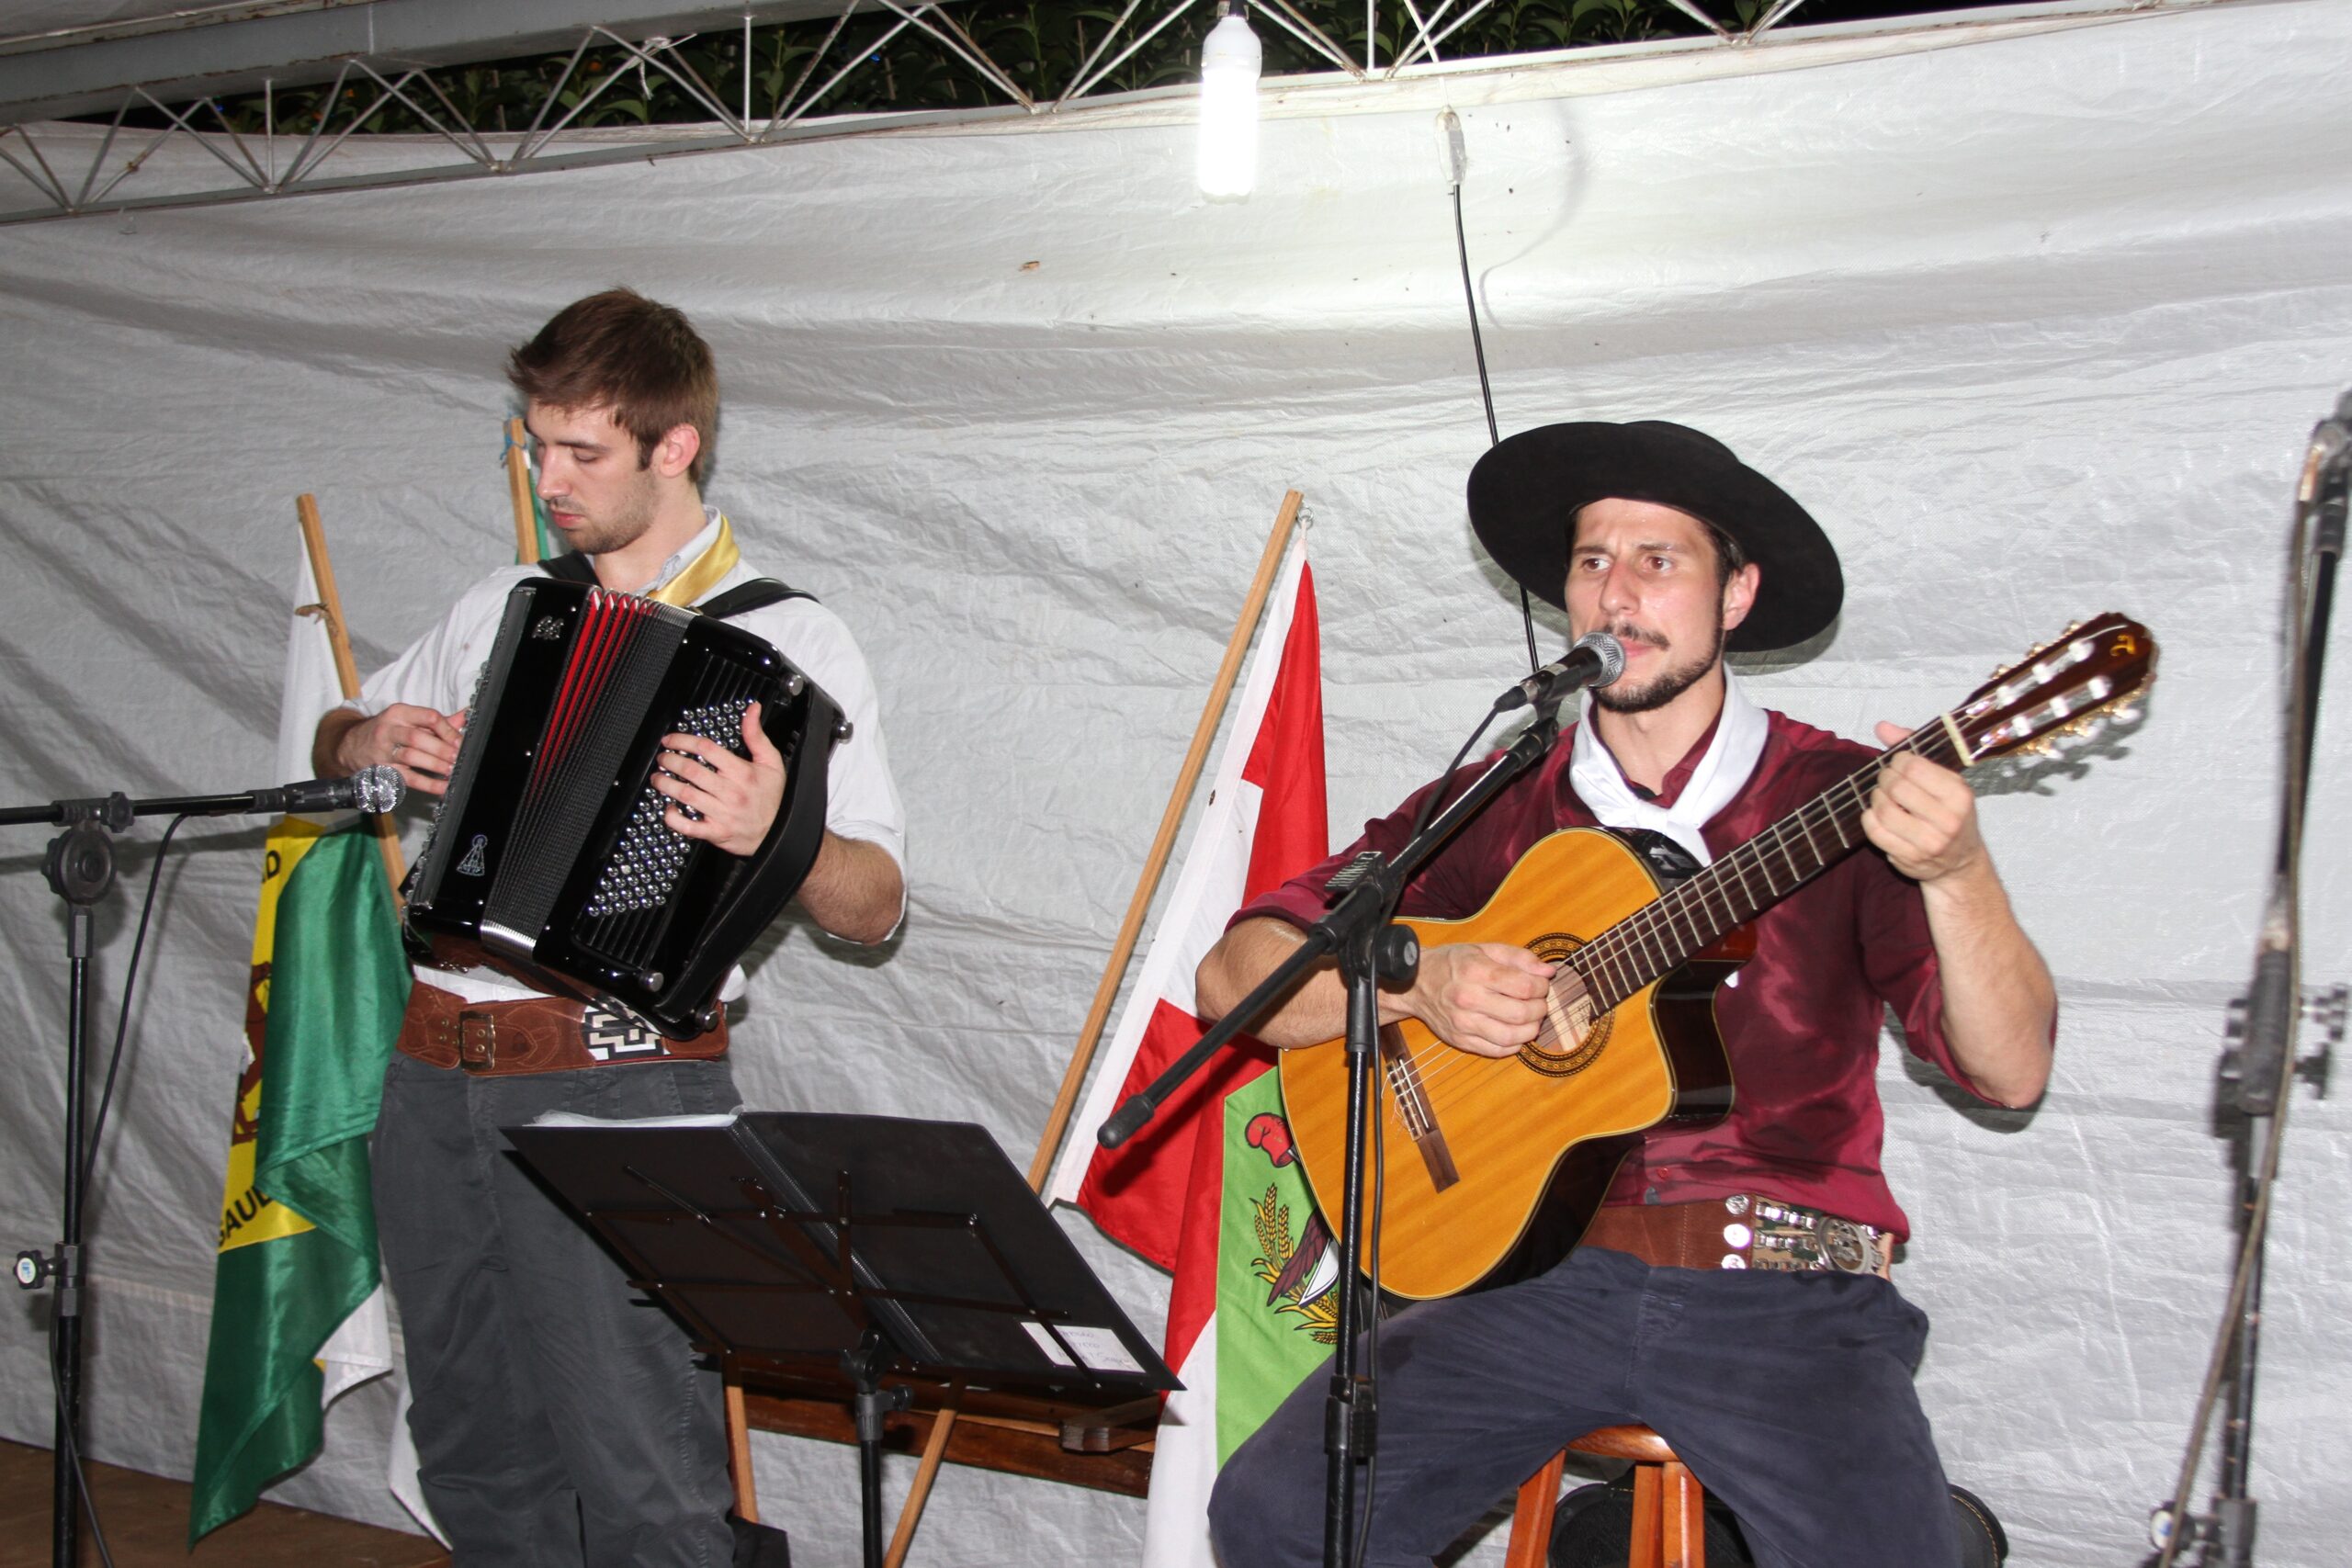 Dupla Fernando e Gustavo executaram com profissionalismo diversas músicas gauchescas